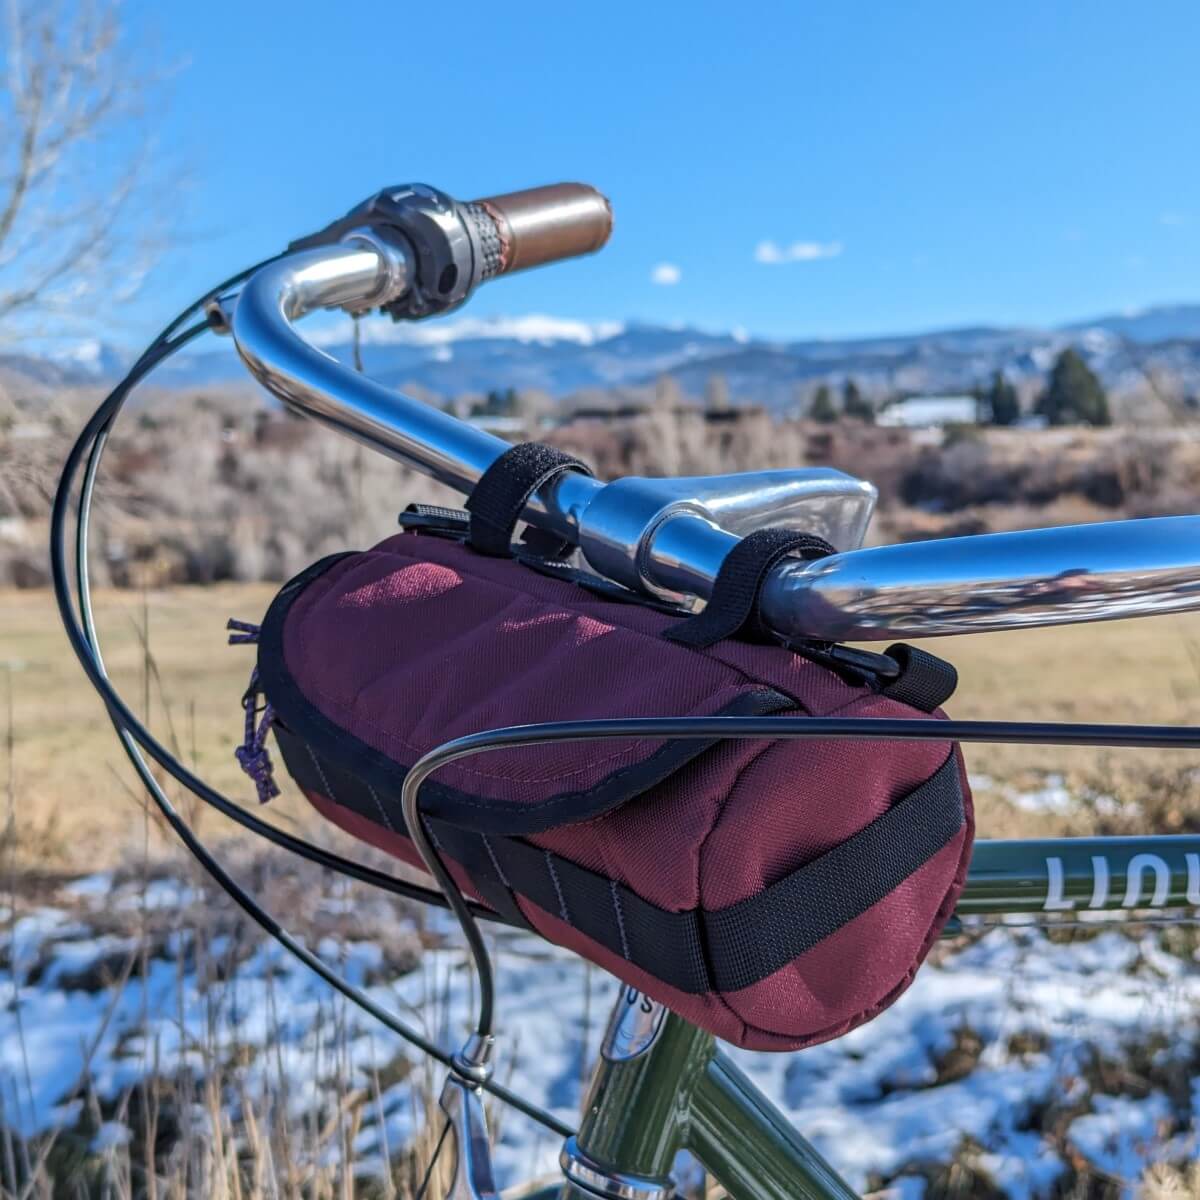 wine colored handlebar bag on Dutch bike